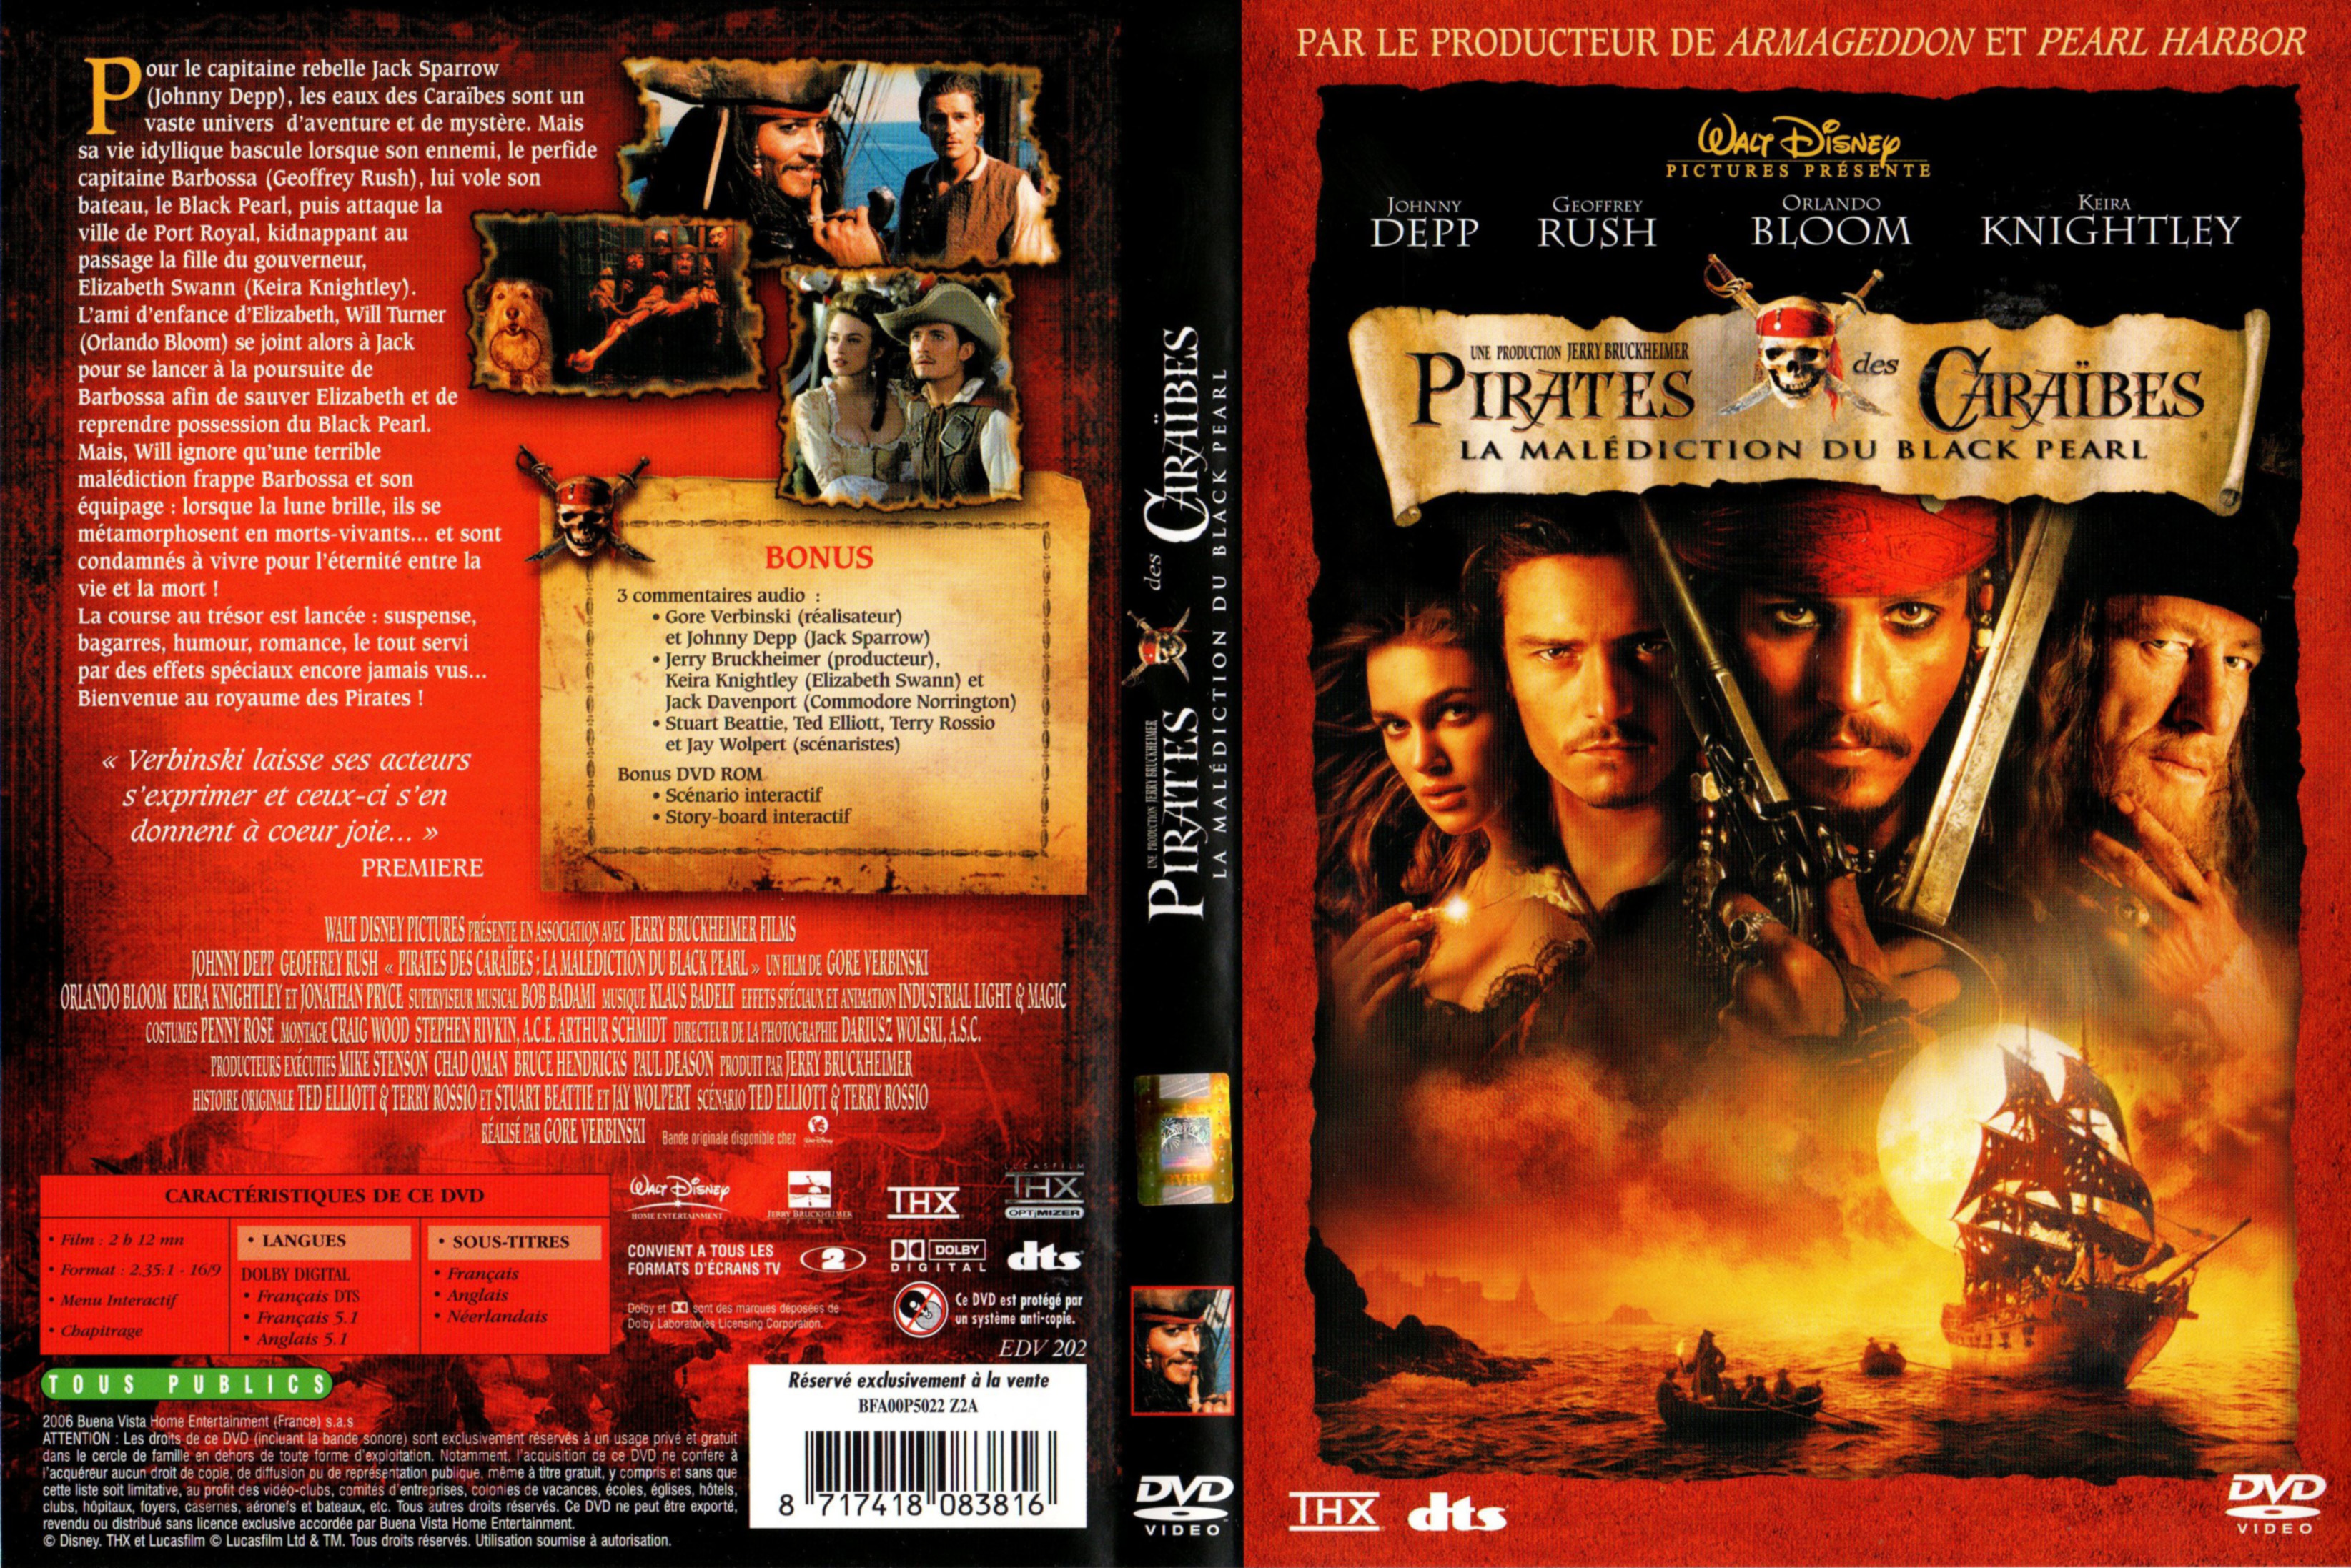 Jaquette DVD Pirates des caraibes v2